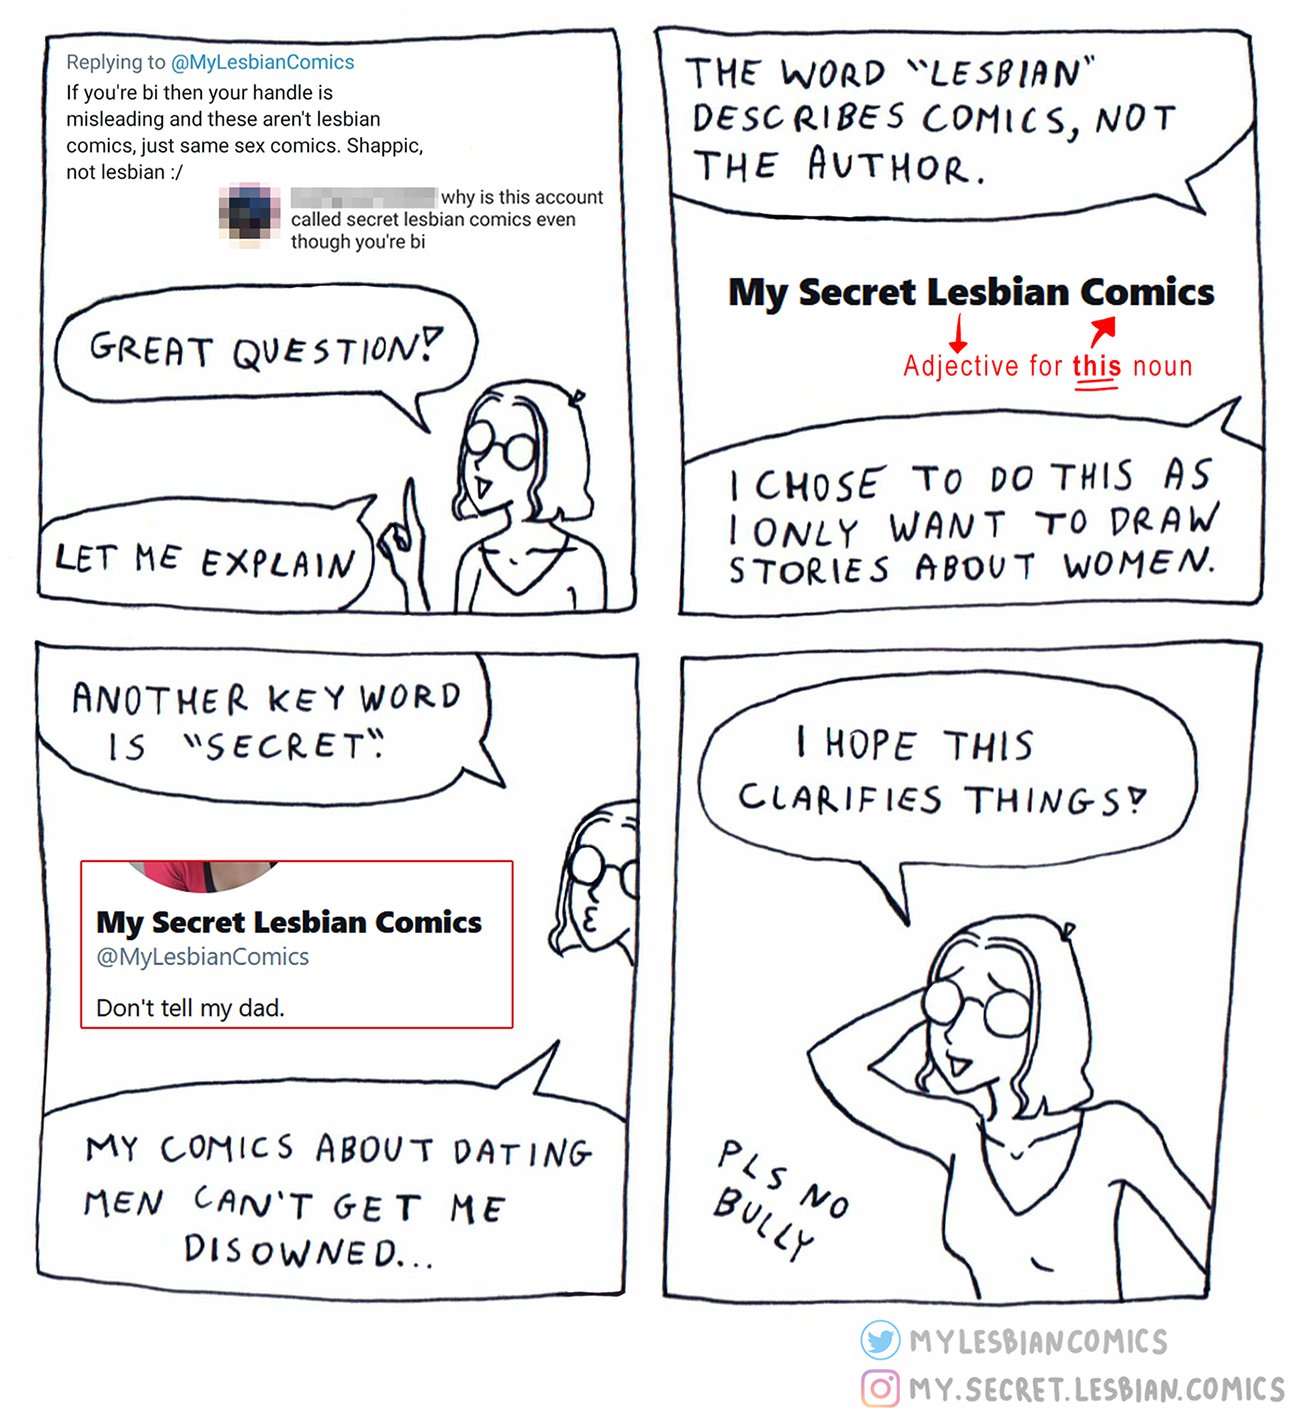 My Secret Lesbian Comics on X: 